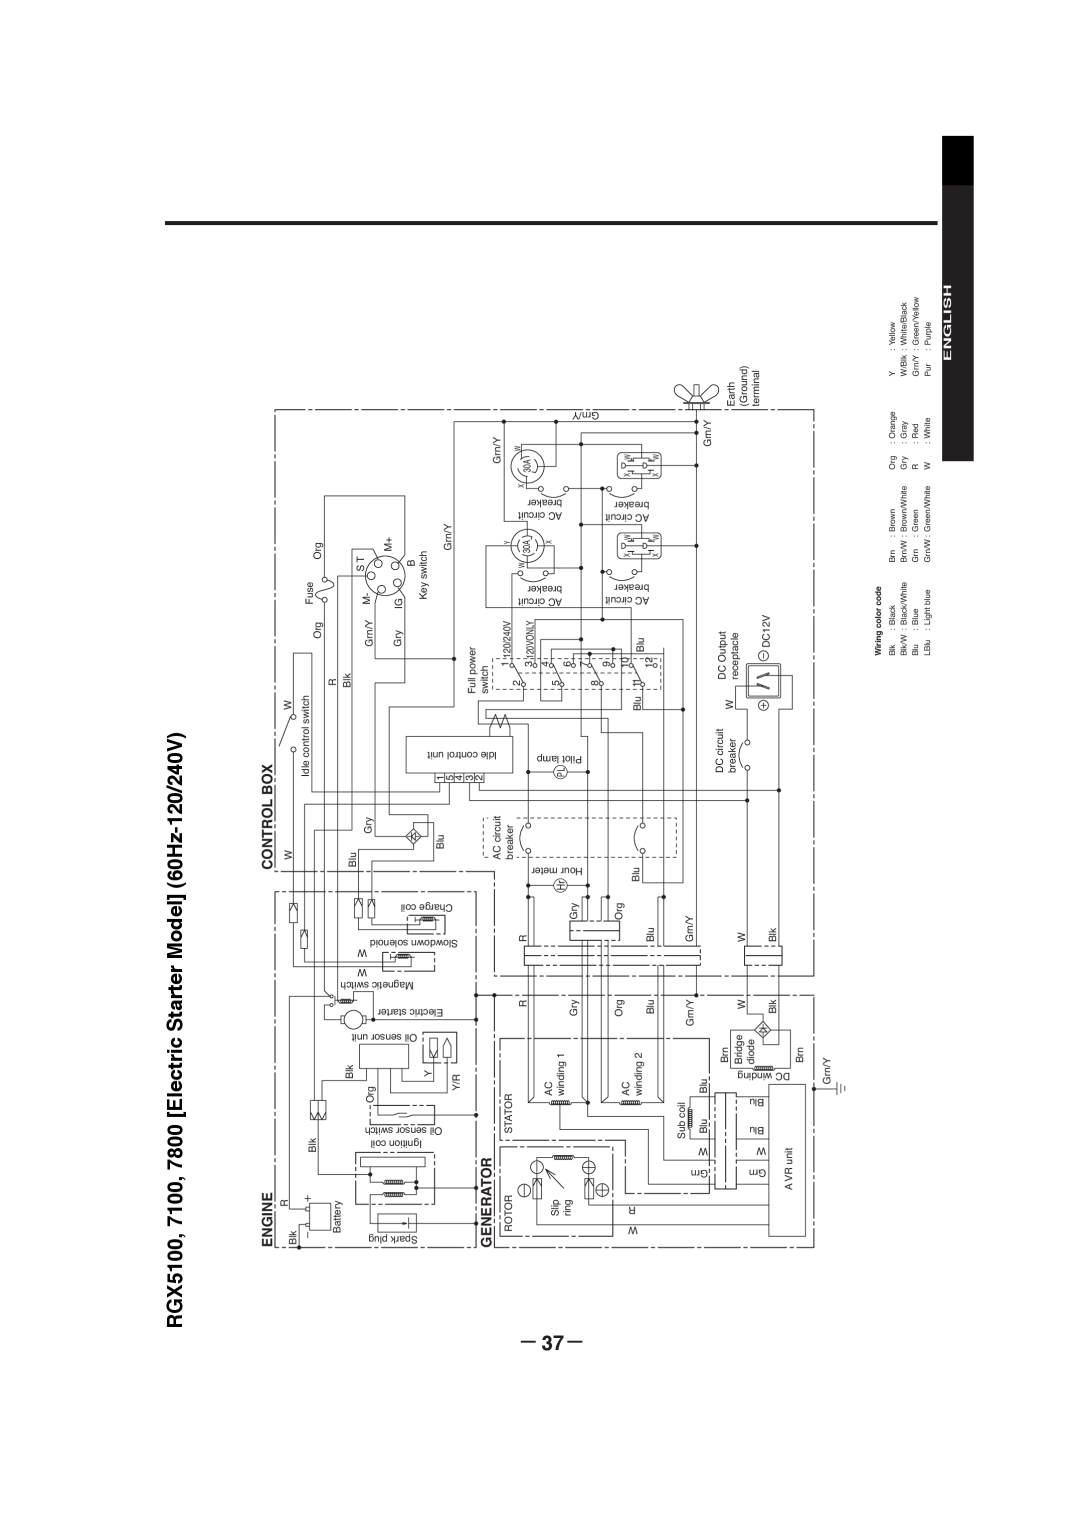 Subaru RGX3800, RGX7800, RGX3000, RGX5100, RGX7100 manual － 37－, English, Engine, Control Box, Generator 